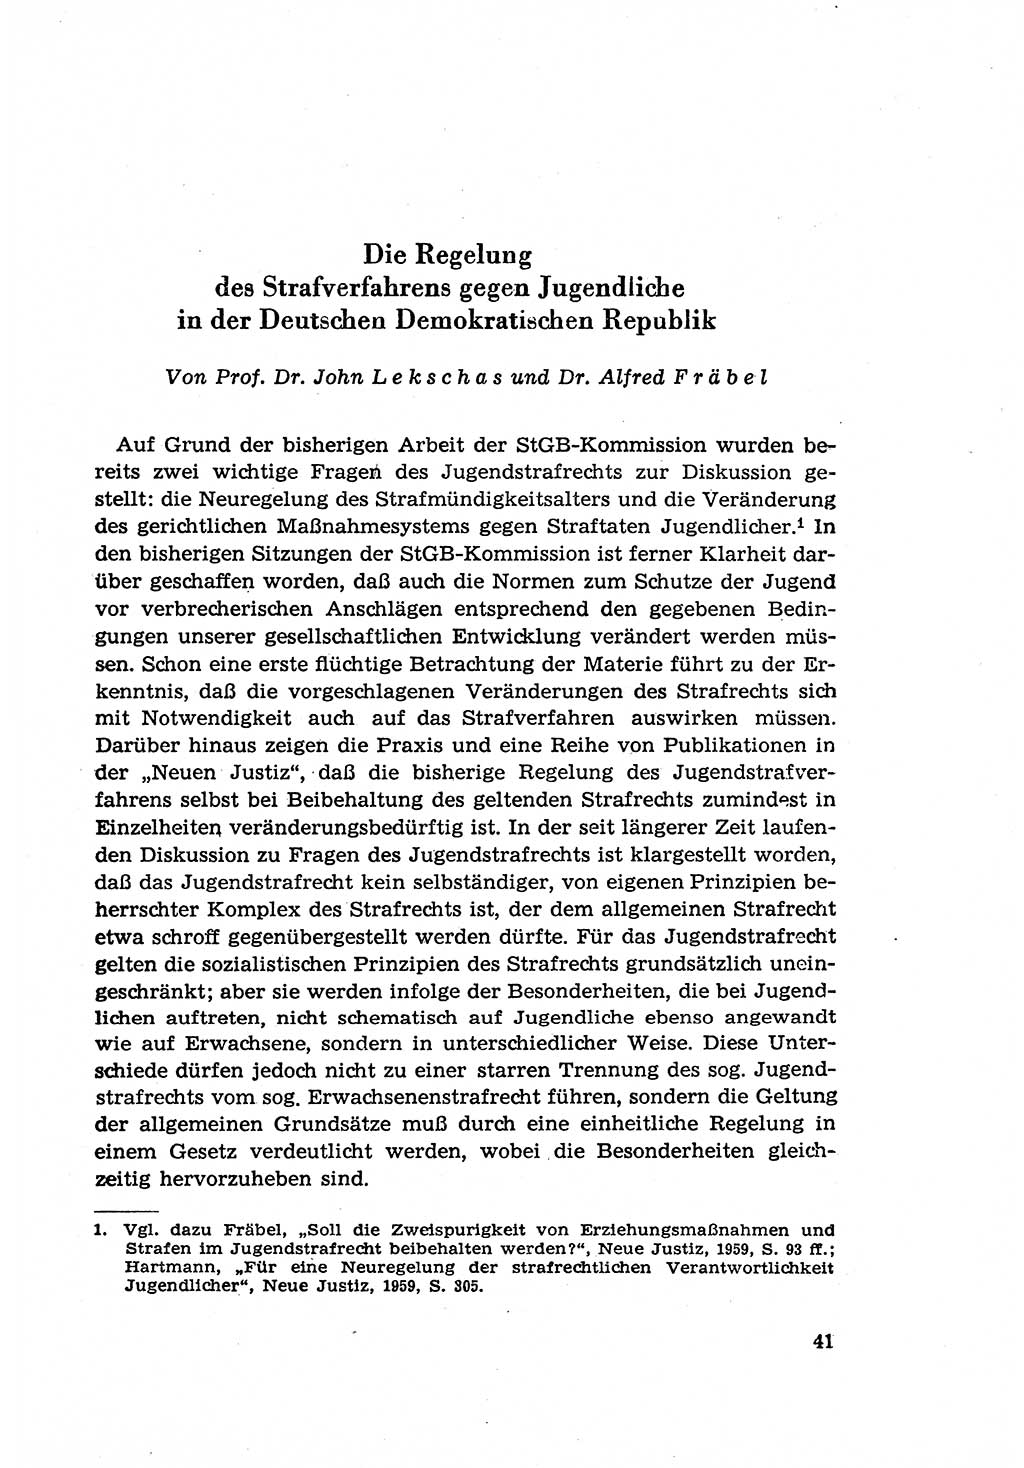 Zur Entwicklung des sozialistischen Strafrechts der Deutschen Demokratischen Republik (DDR) 1960, Seite 41 (Entw. soz. Strafr. DDR 1960, S. 41)